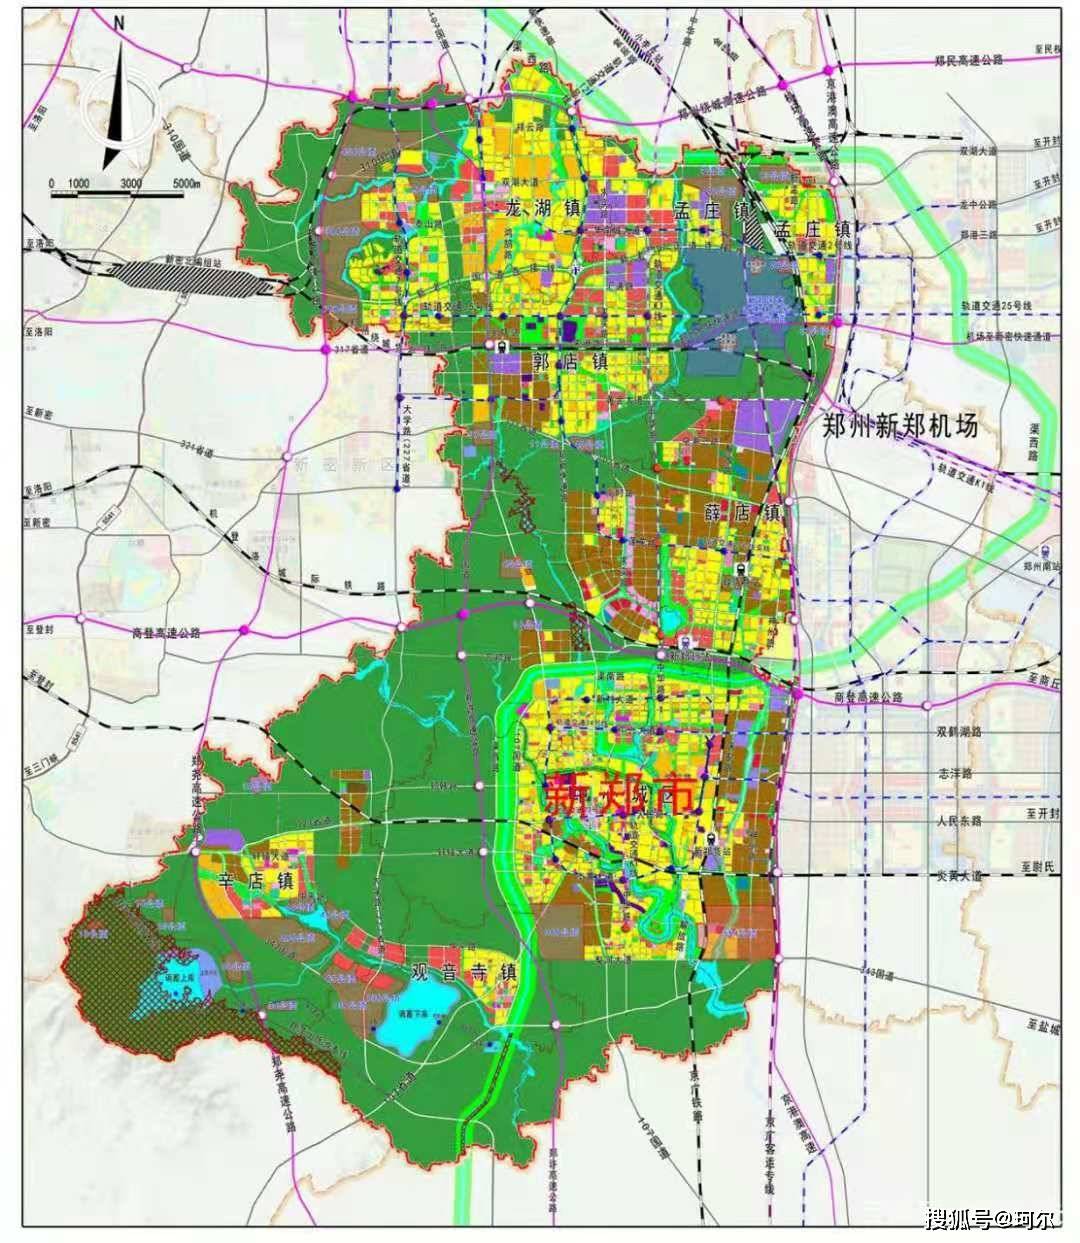 郑州南部大变样!最新规划疑似亮相,涉及多条轨道交通和高快路网!